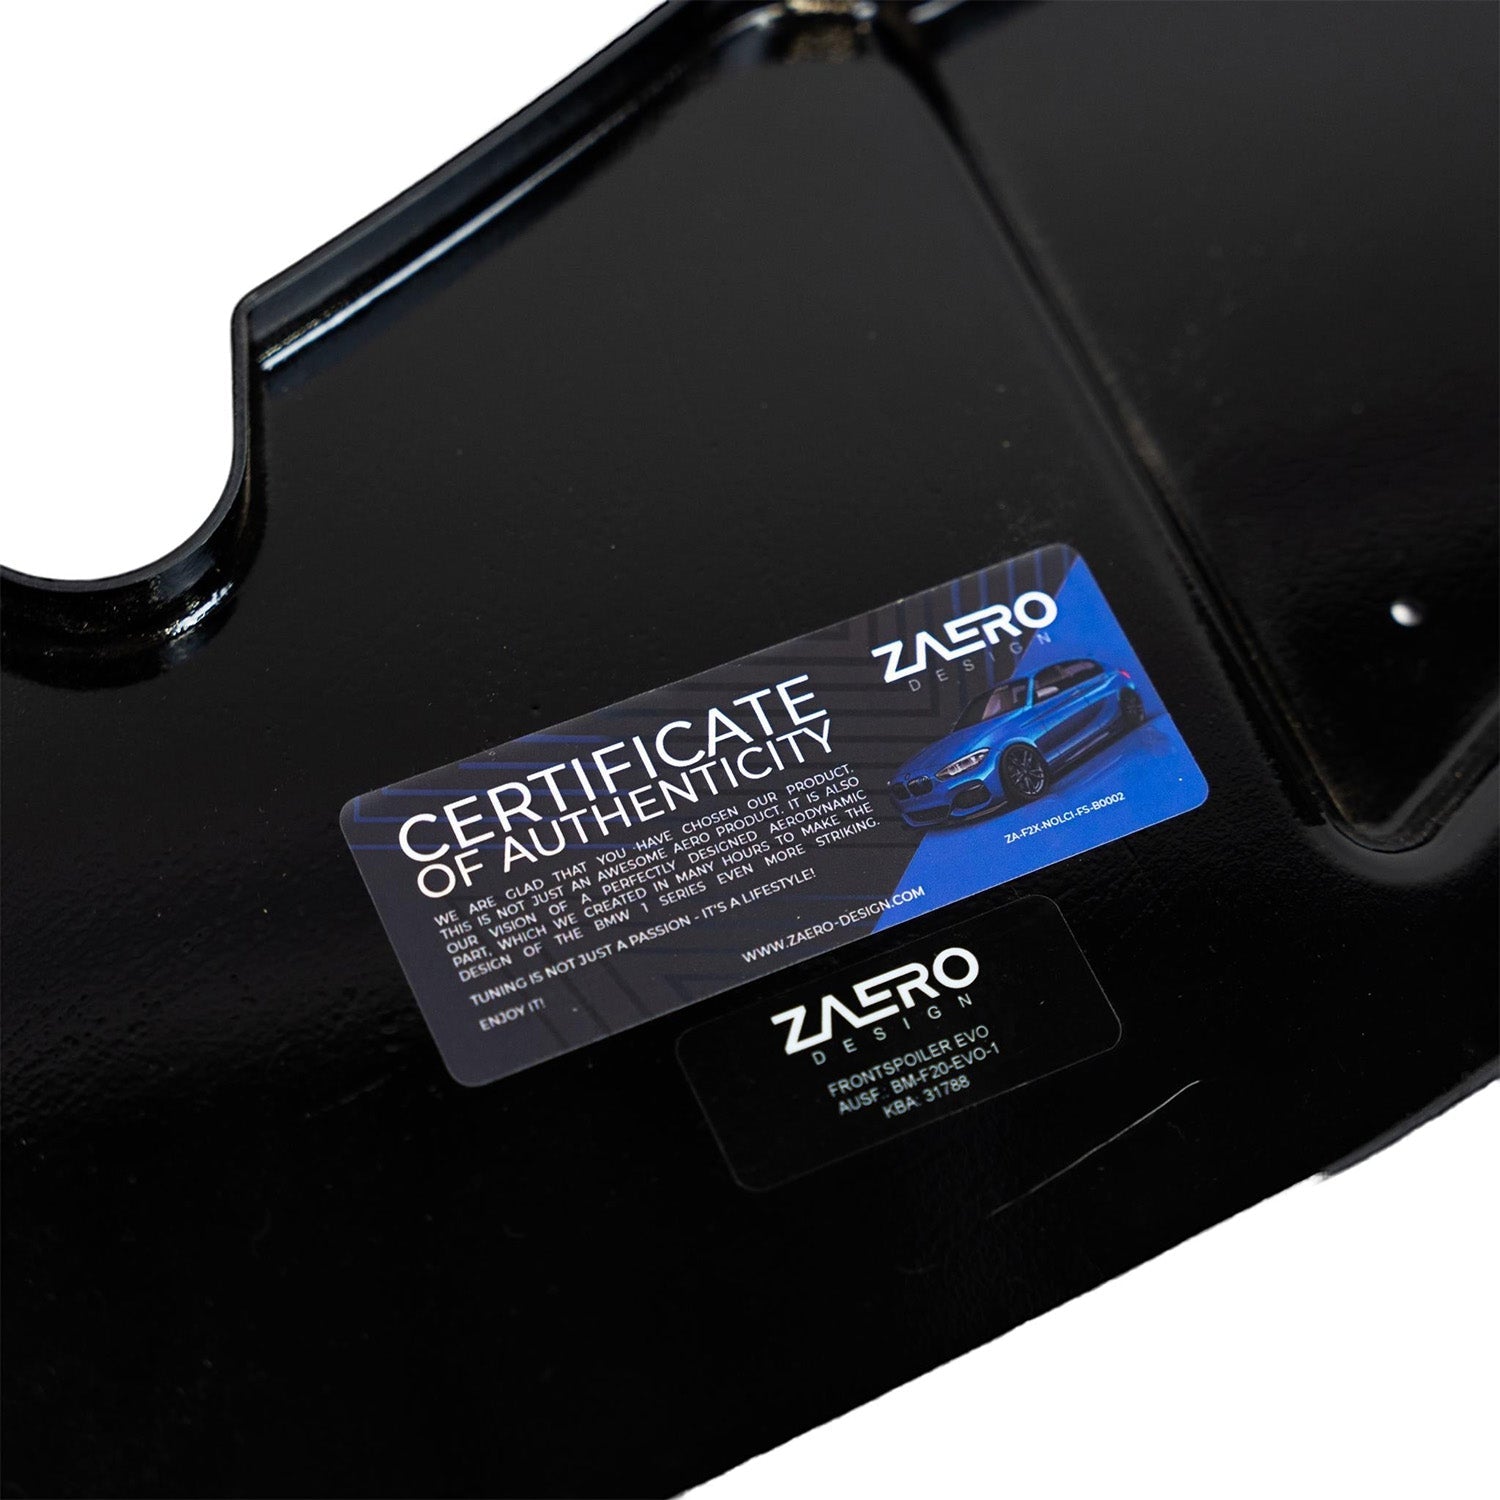 ZAERO Design BMW 1 Series Pre-LCI Gloss Black Front Splitter Authenticity Sticker